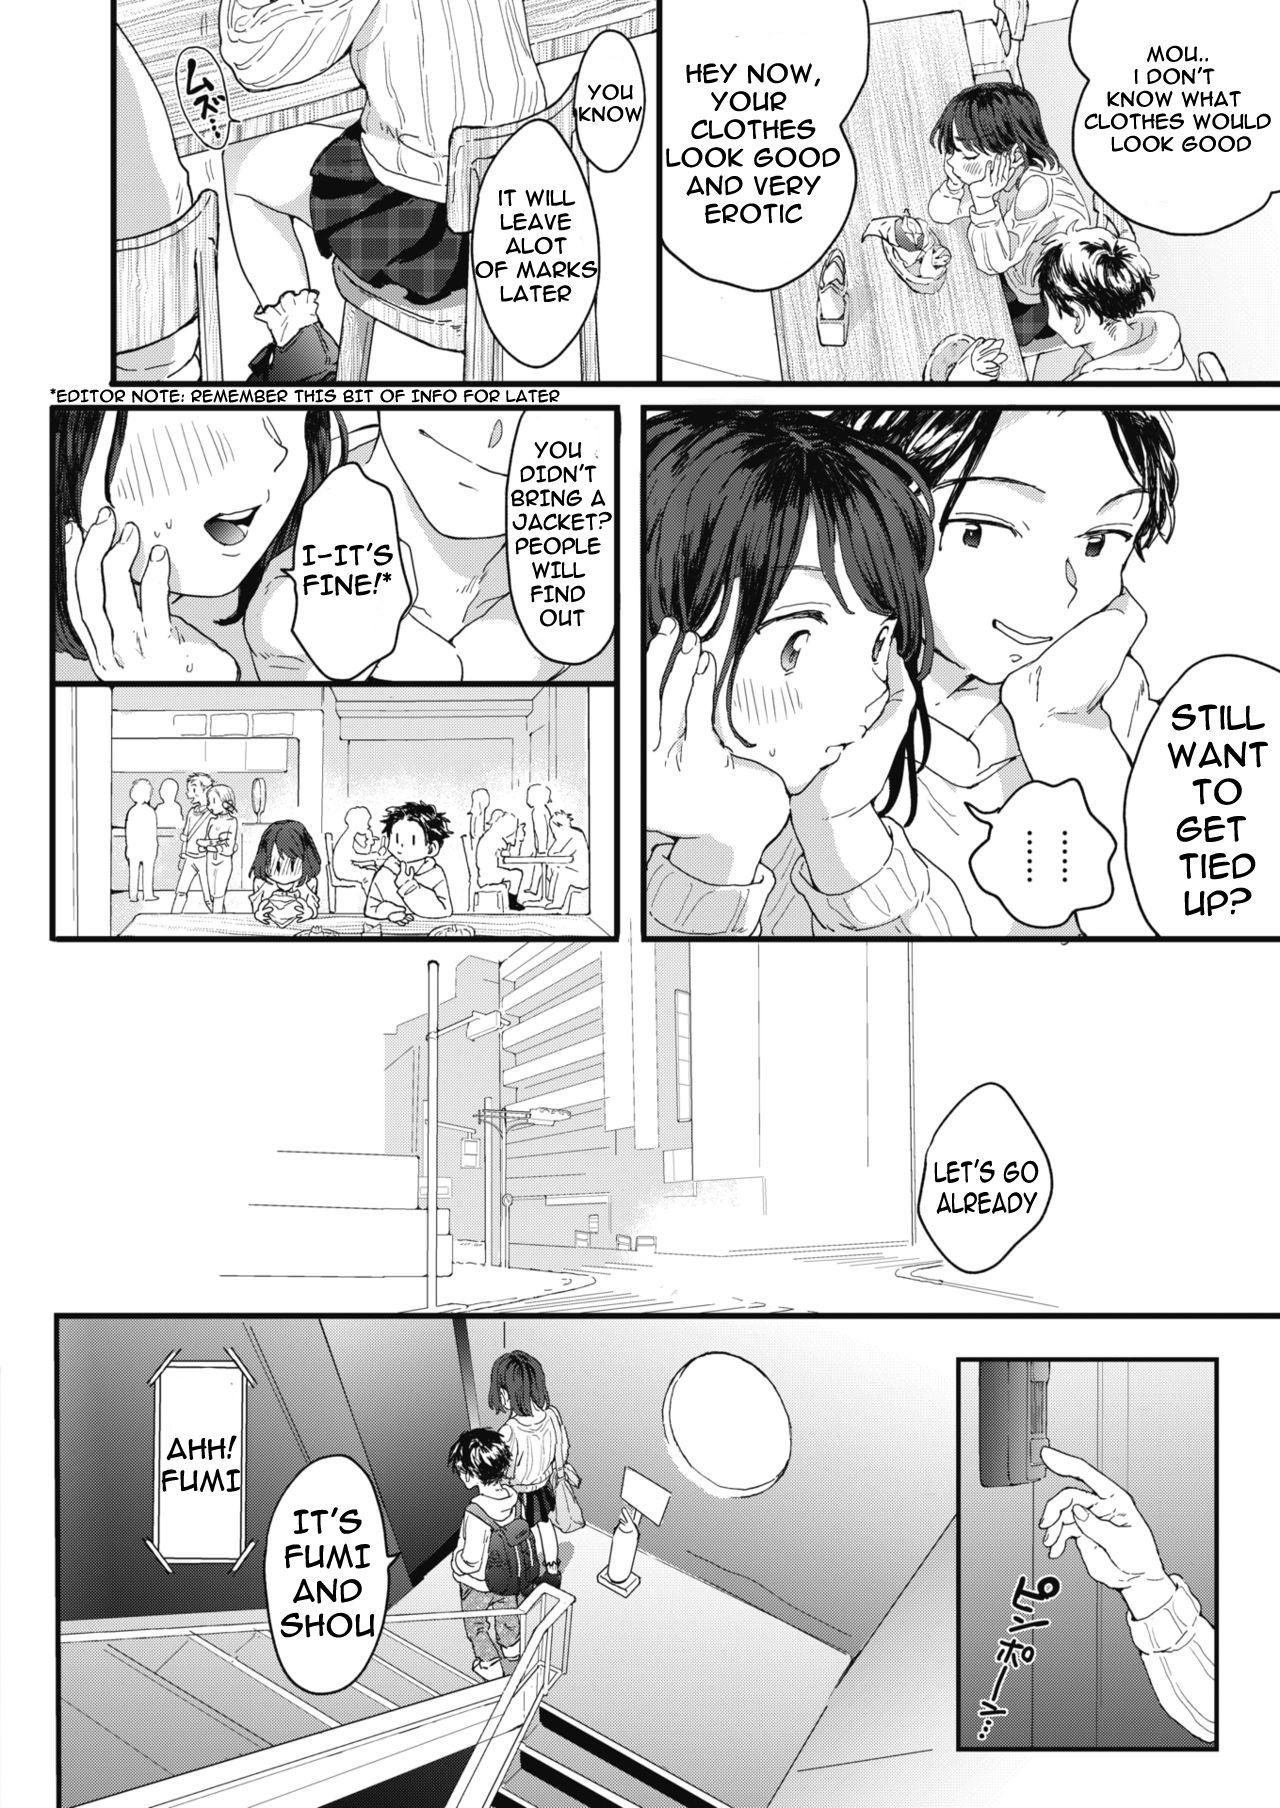 Ftv Girls Sora wo hau Tgirl - Page 2